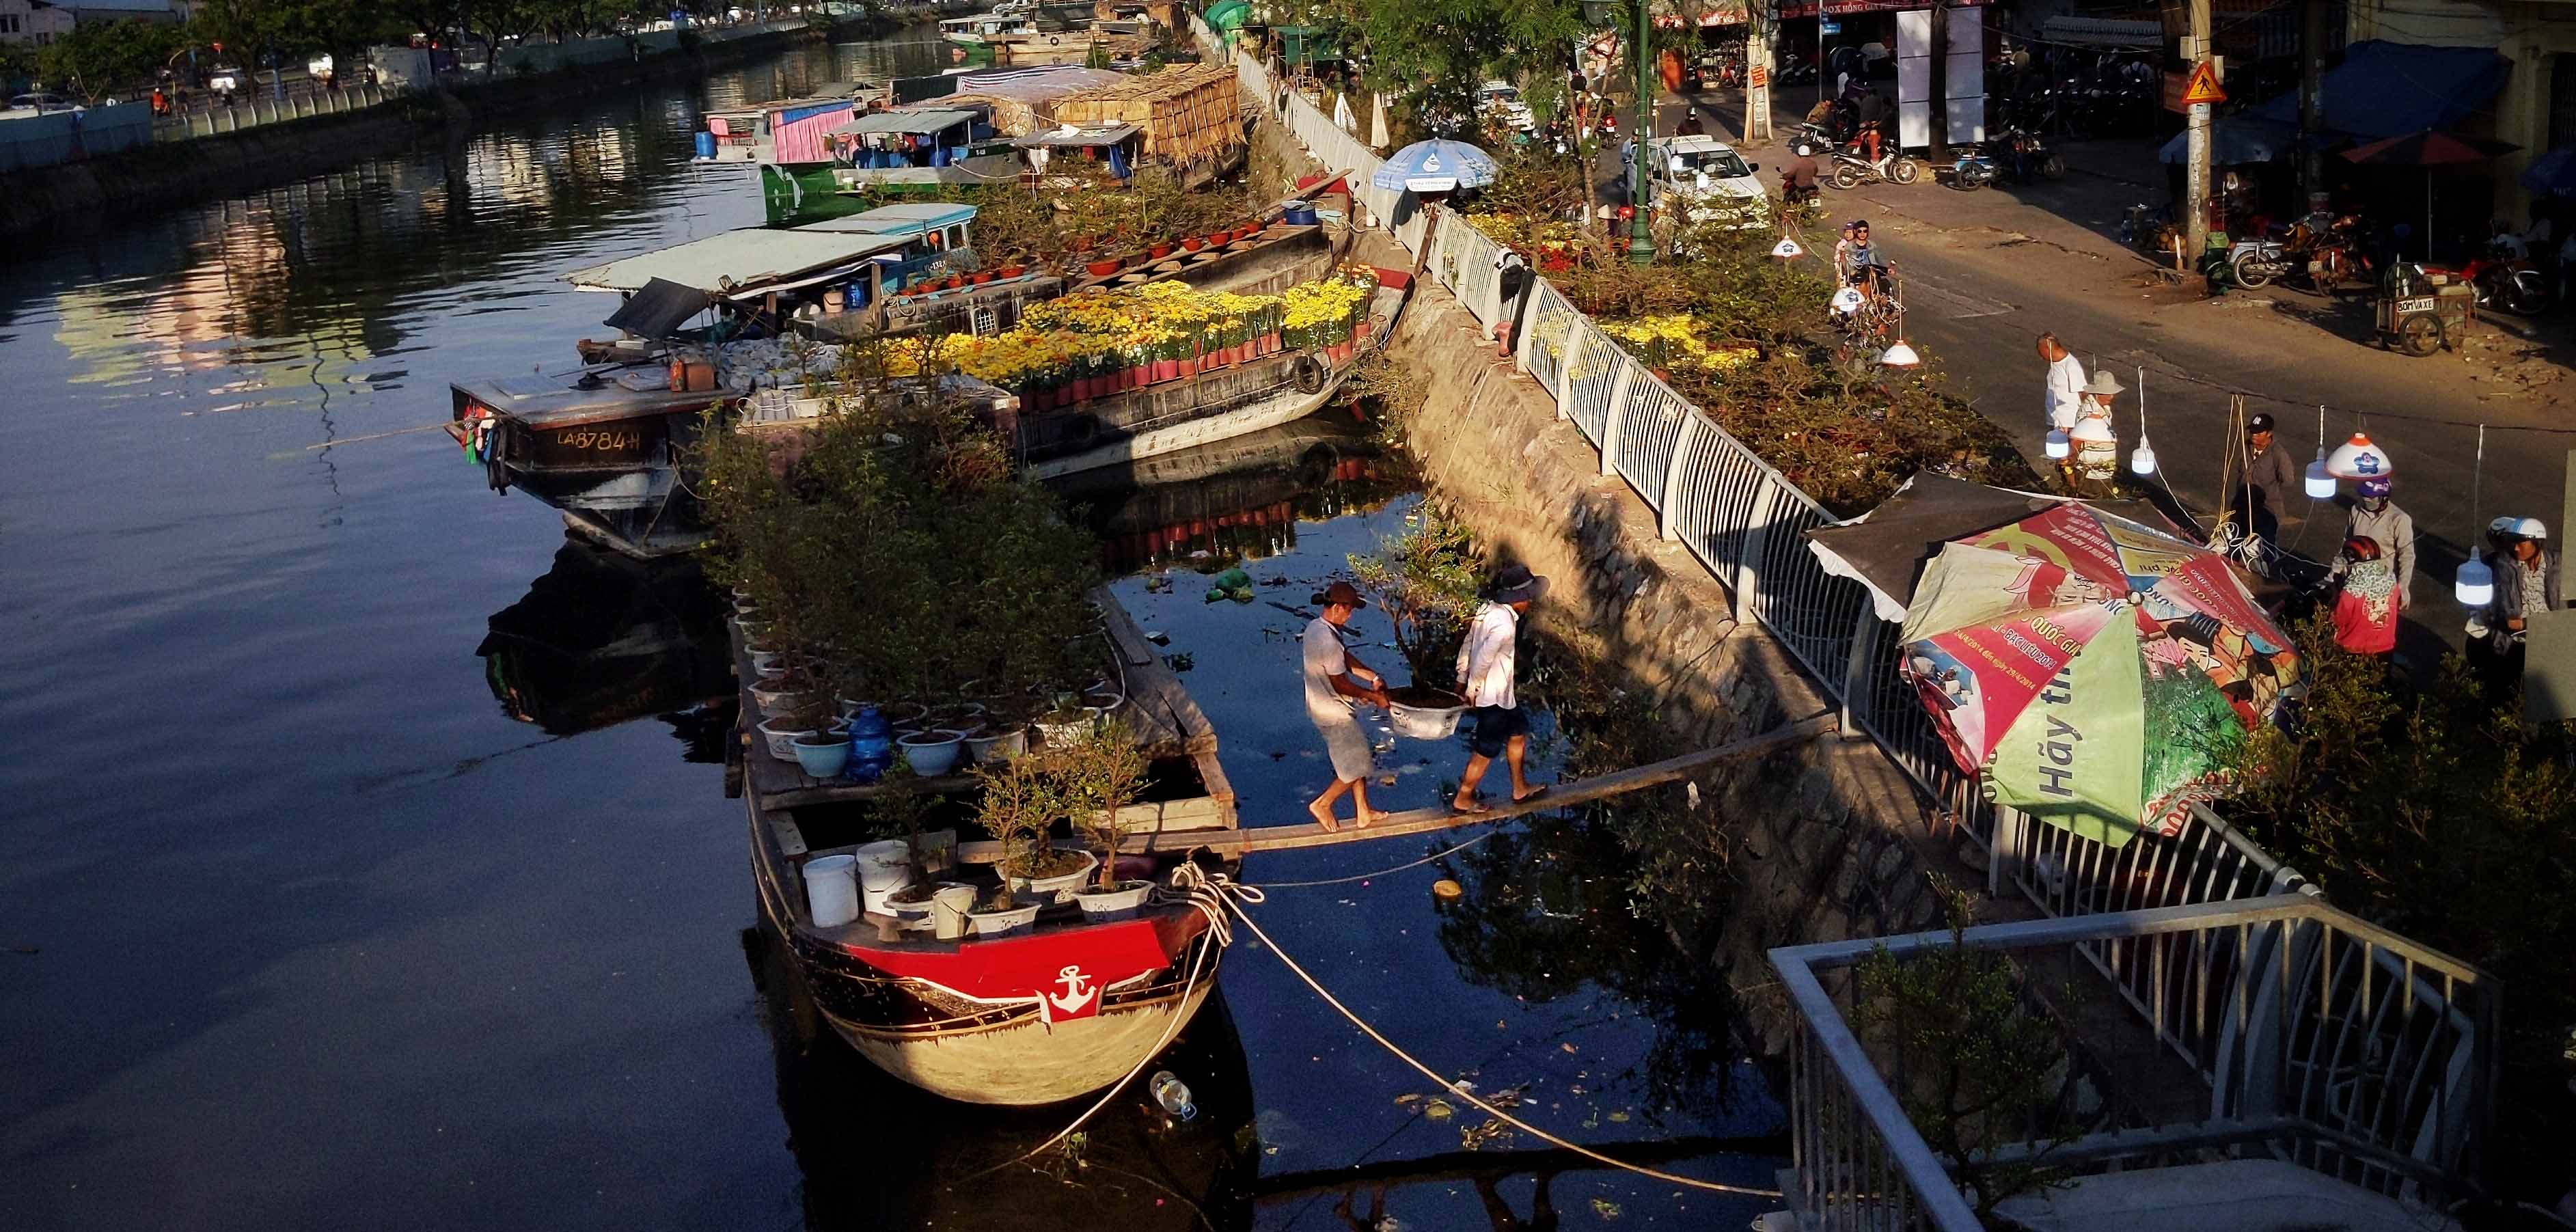 “Trên bến dưới thuyền” - chợ hoa xuân rực rỡ tại Bến Bình Đông - 1